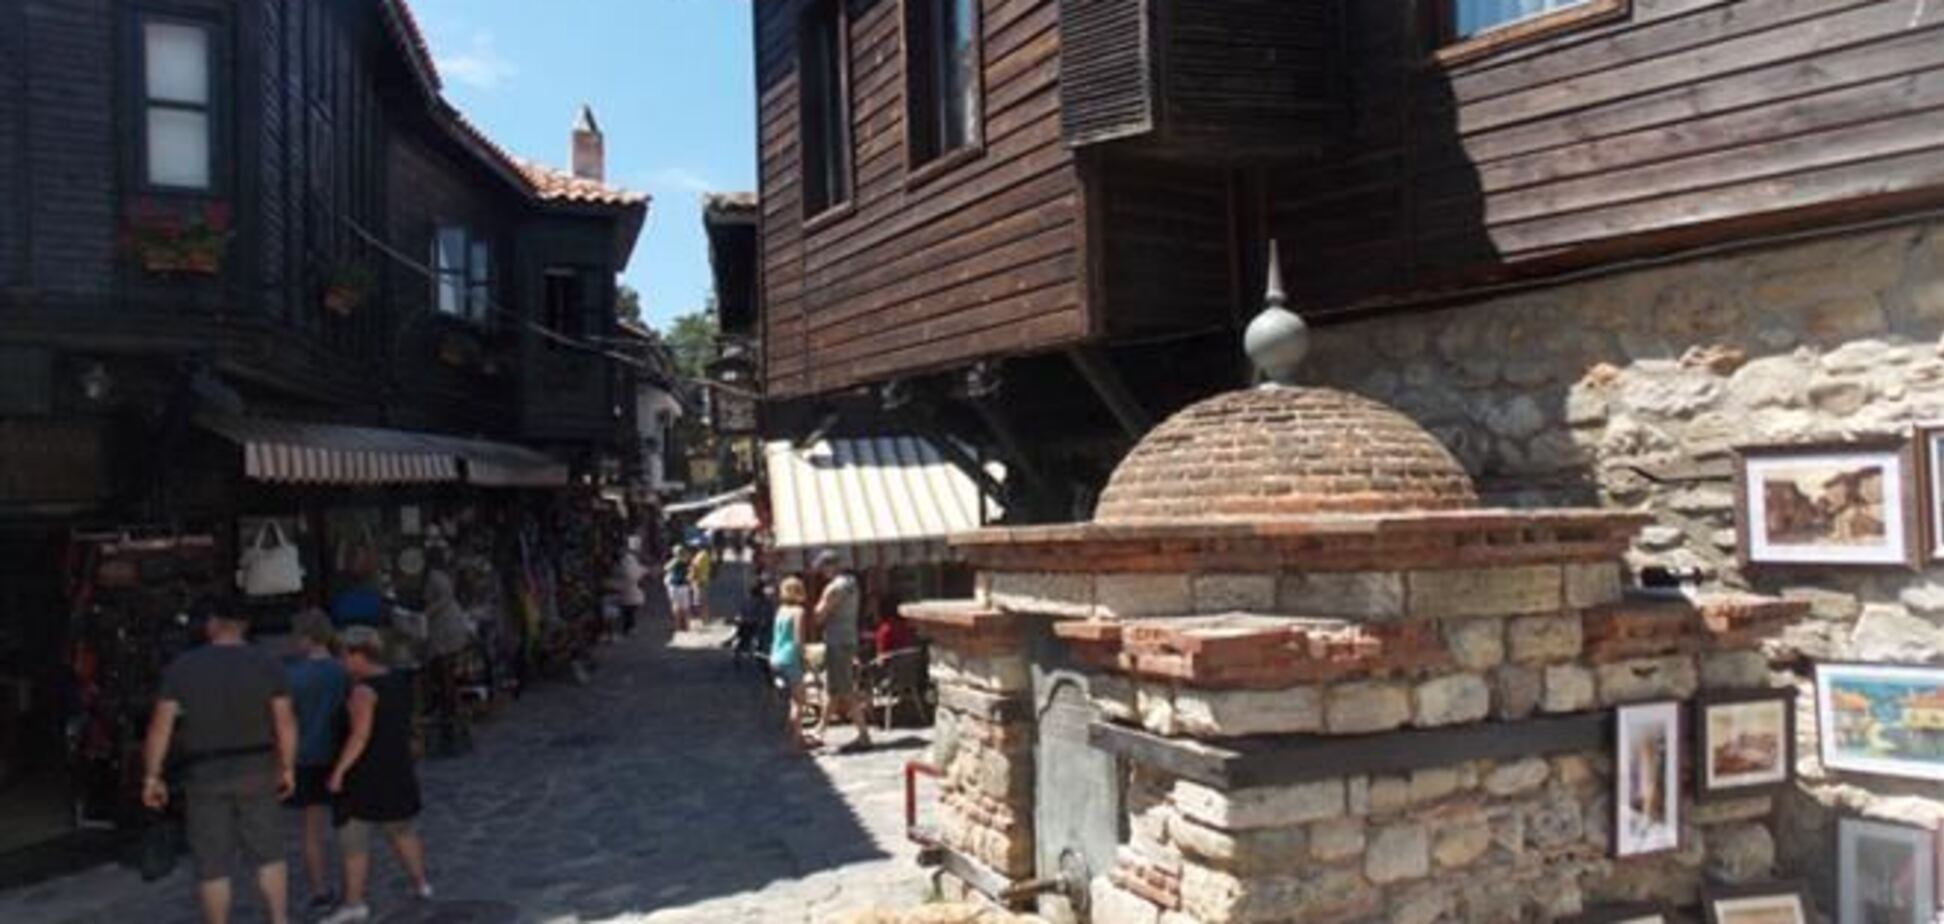 Болгария ждет туристов, которые посещают не только рестораны 